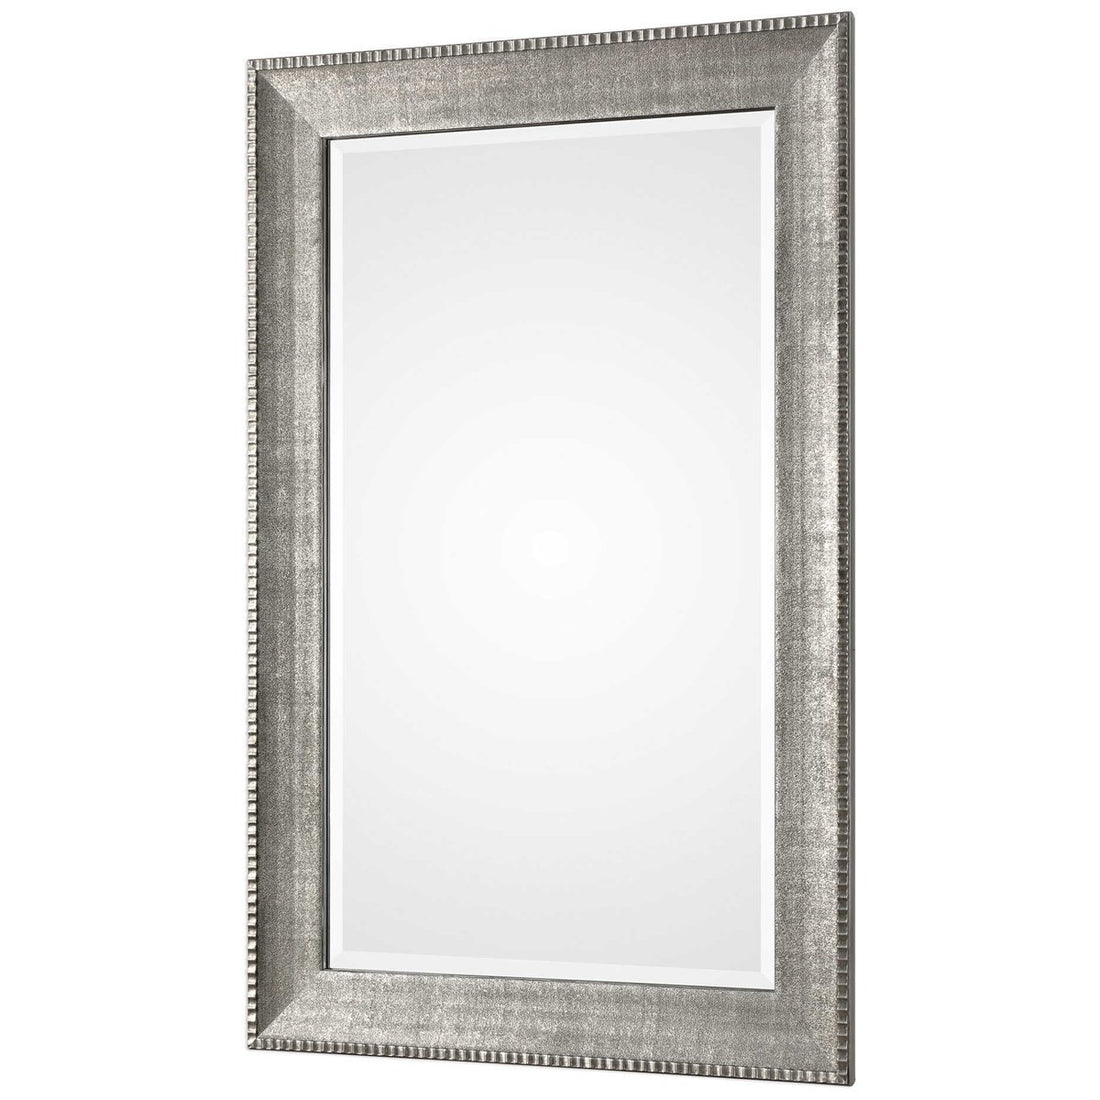 Uttermost Leiston Metallic Silver Mirror